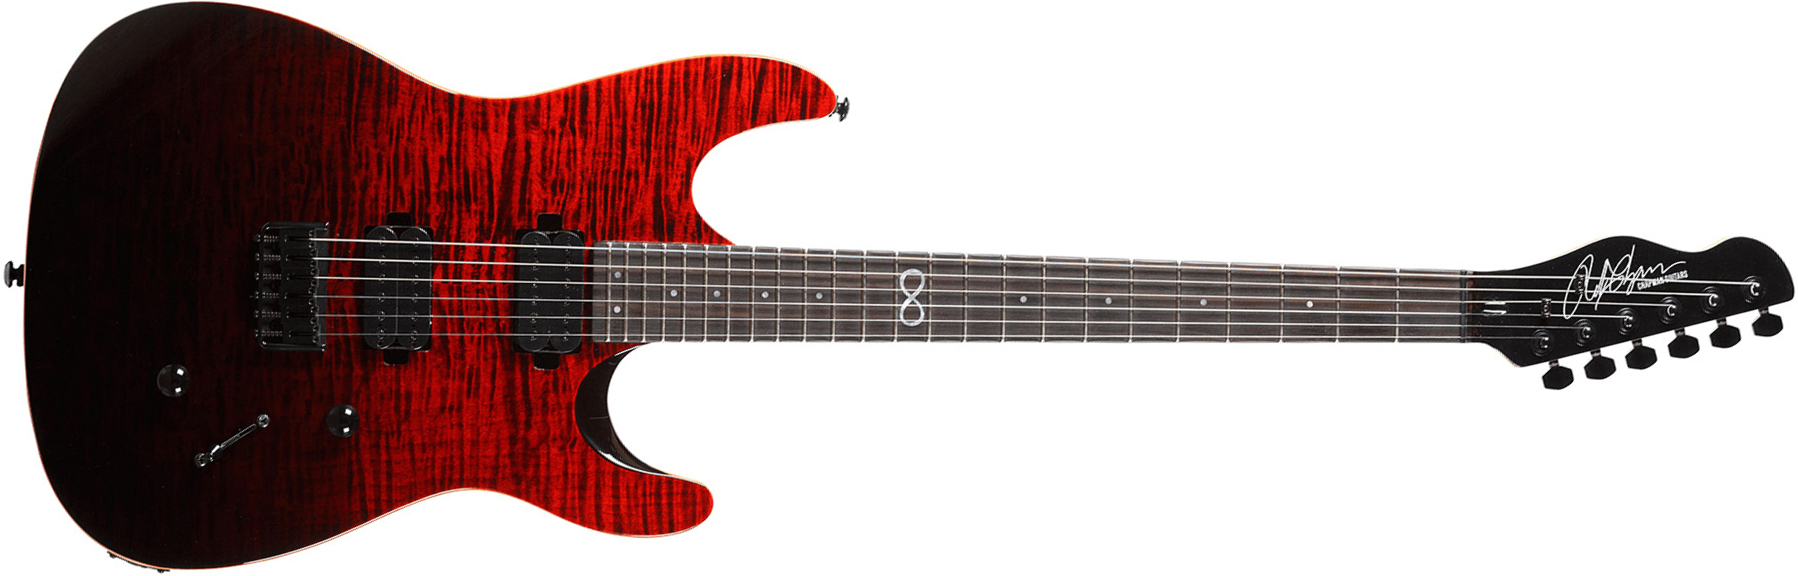 Chapman Guitars Ml1 Modern Standard V2 Hh Ht Eb - Black Blood - Guitarra eléctrica de doble corte - Main picture